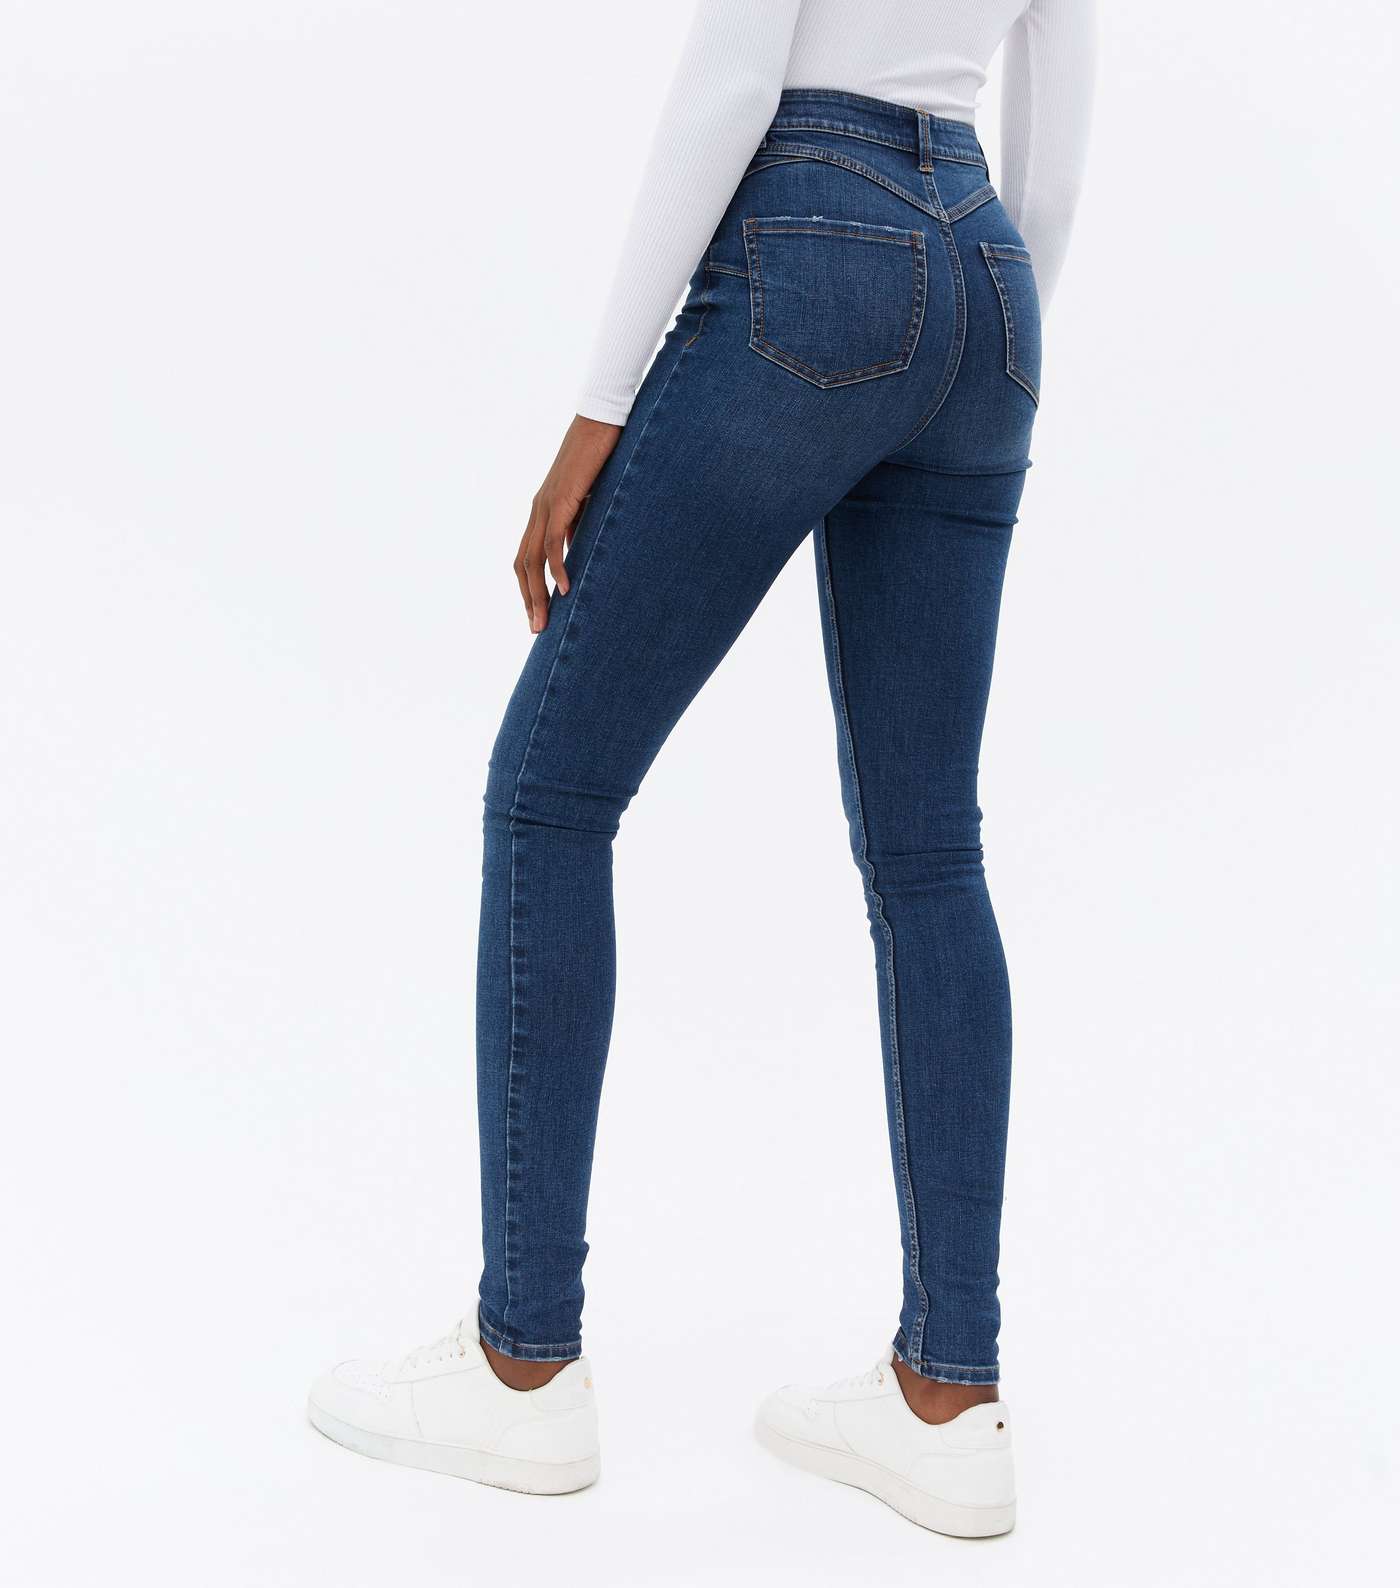 Tall Teal Lift & Shape Jenna Skinny Jeans Image 4